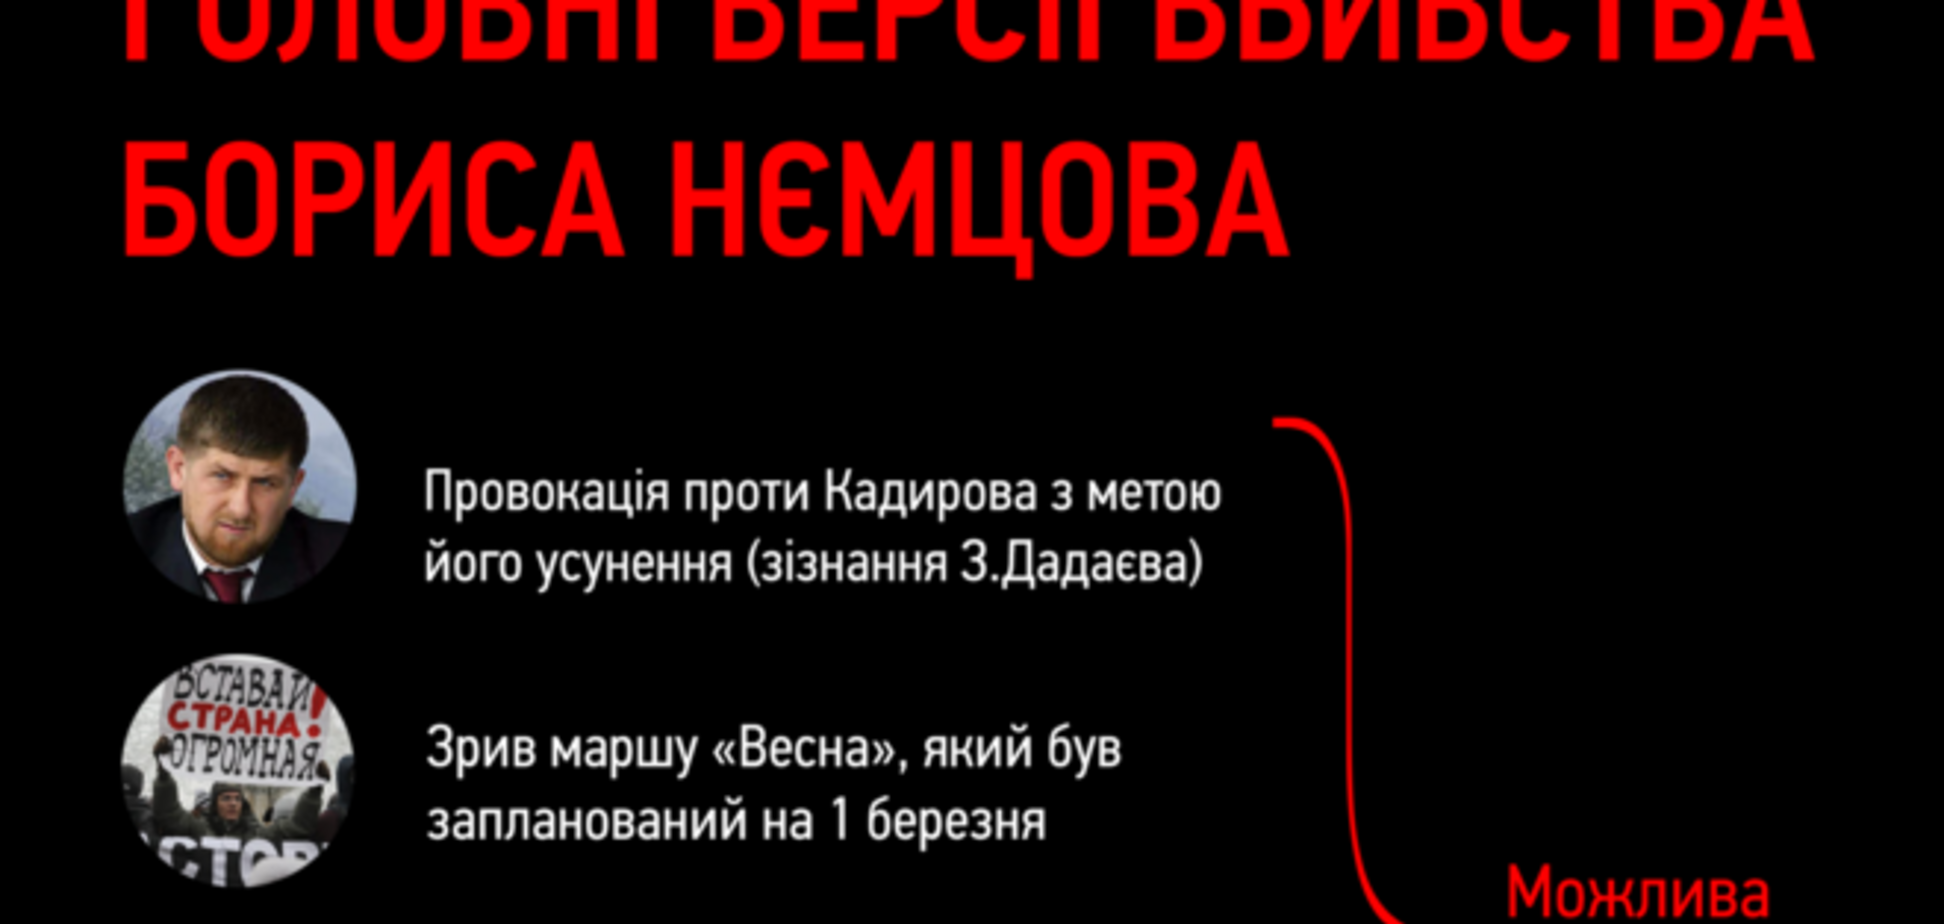 7 главных версий убийства Немцова: инфографика 